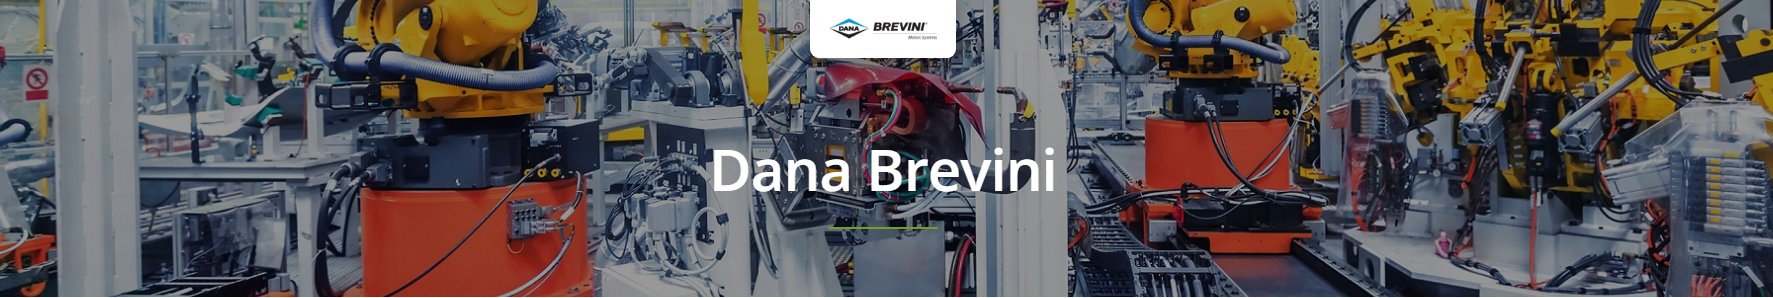 Dana Brevini Mobile Valves